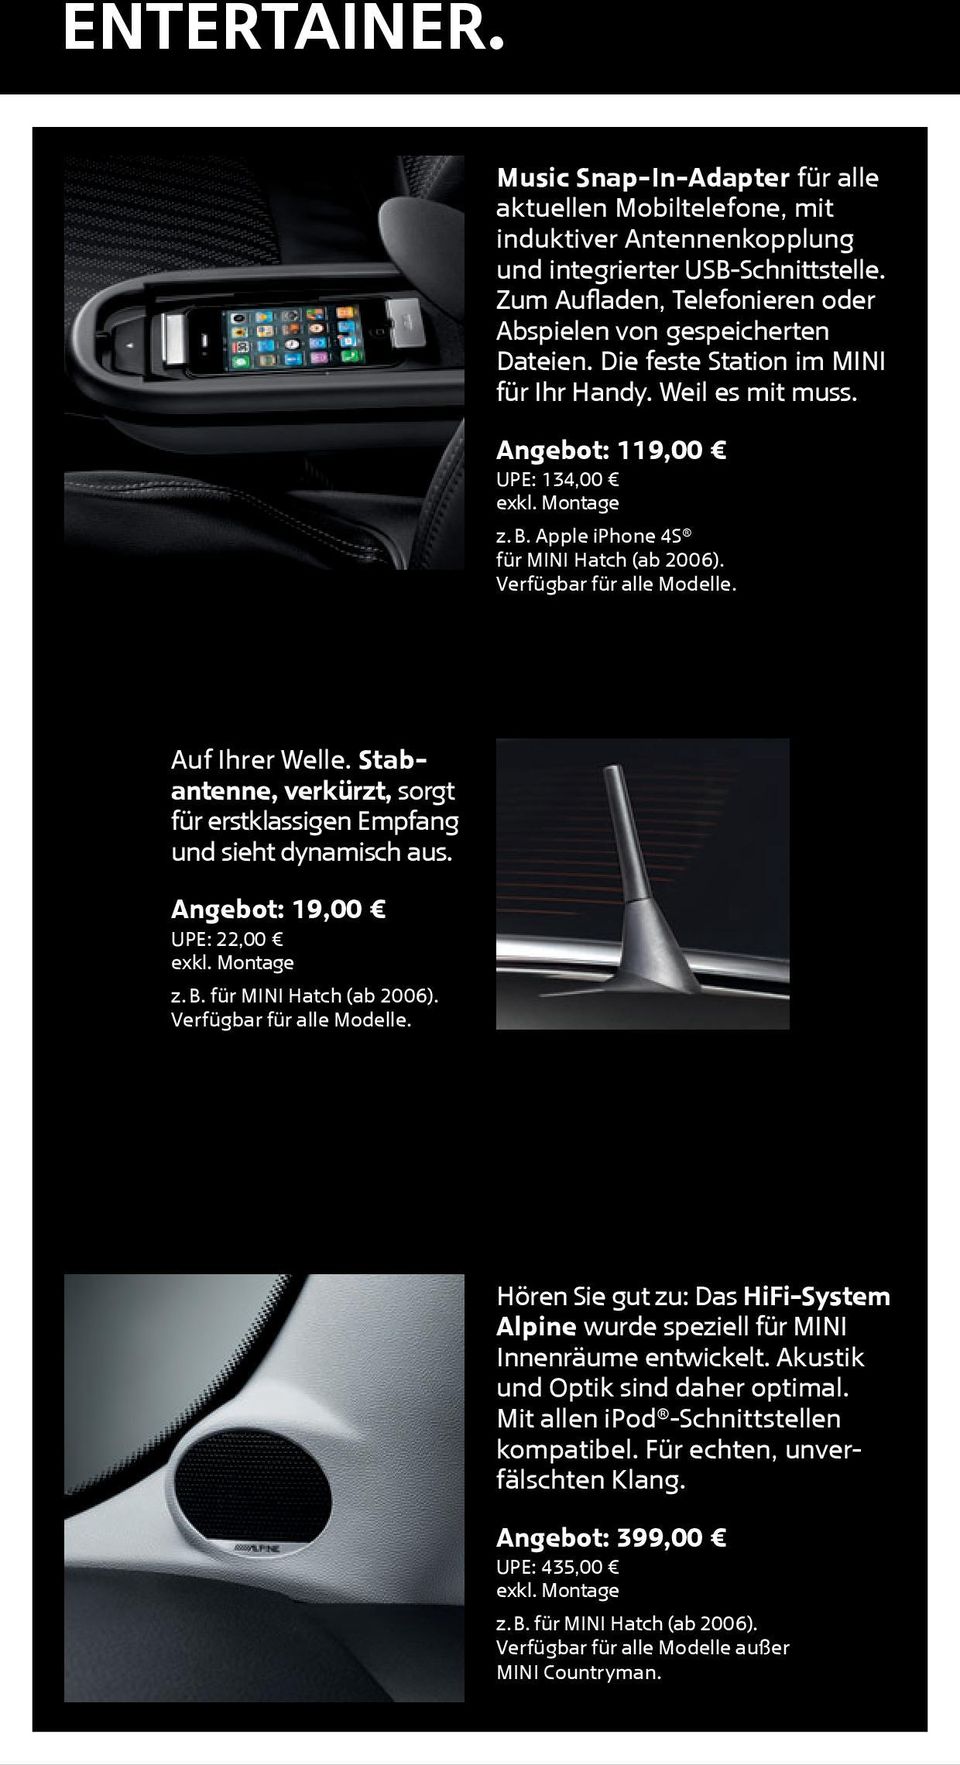 Apple iphone 4S für MINI Hatch (ab 2006). Verfügbar für alle Modelle. Auf Ihrer Welle. S t a b- antenne, verkürzt, sorgt für erstklassigen Empfang und sieht dynamisch aus.